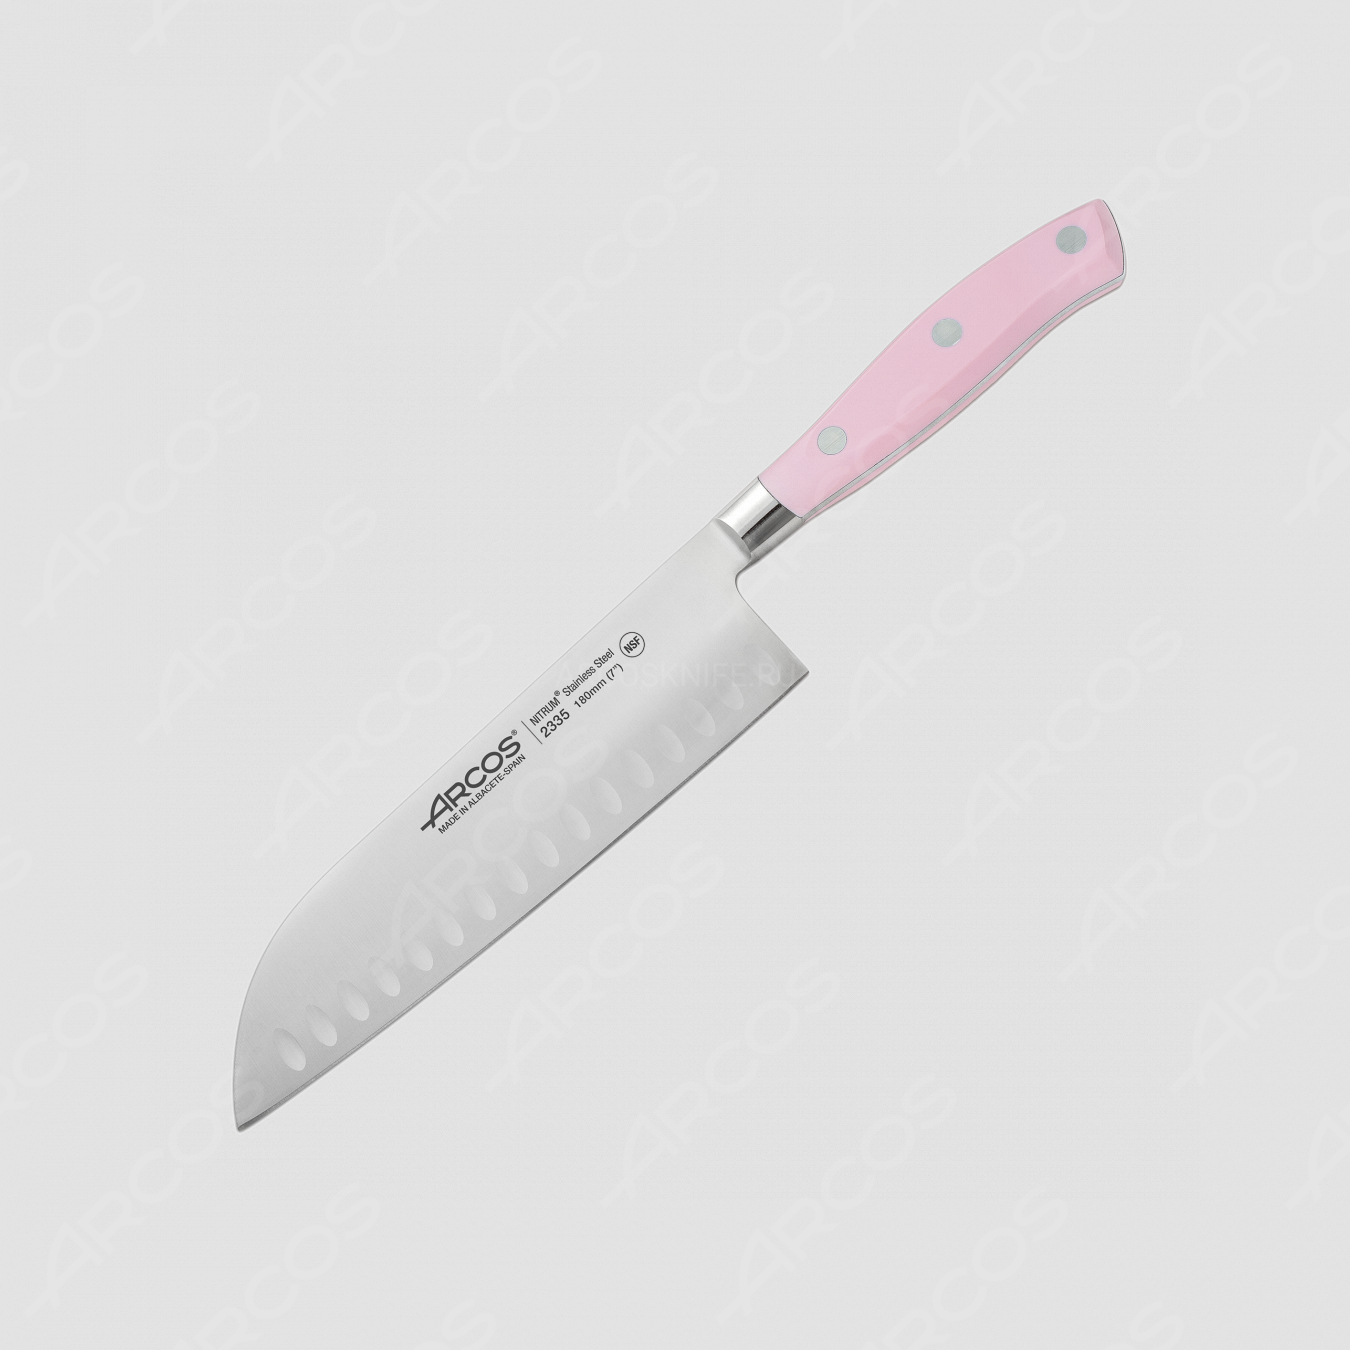 Профессиональный поварской кухонный нож японский «Шеф» 18 см, серия Riviera Rose, ARCOS, Испания